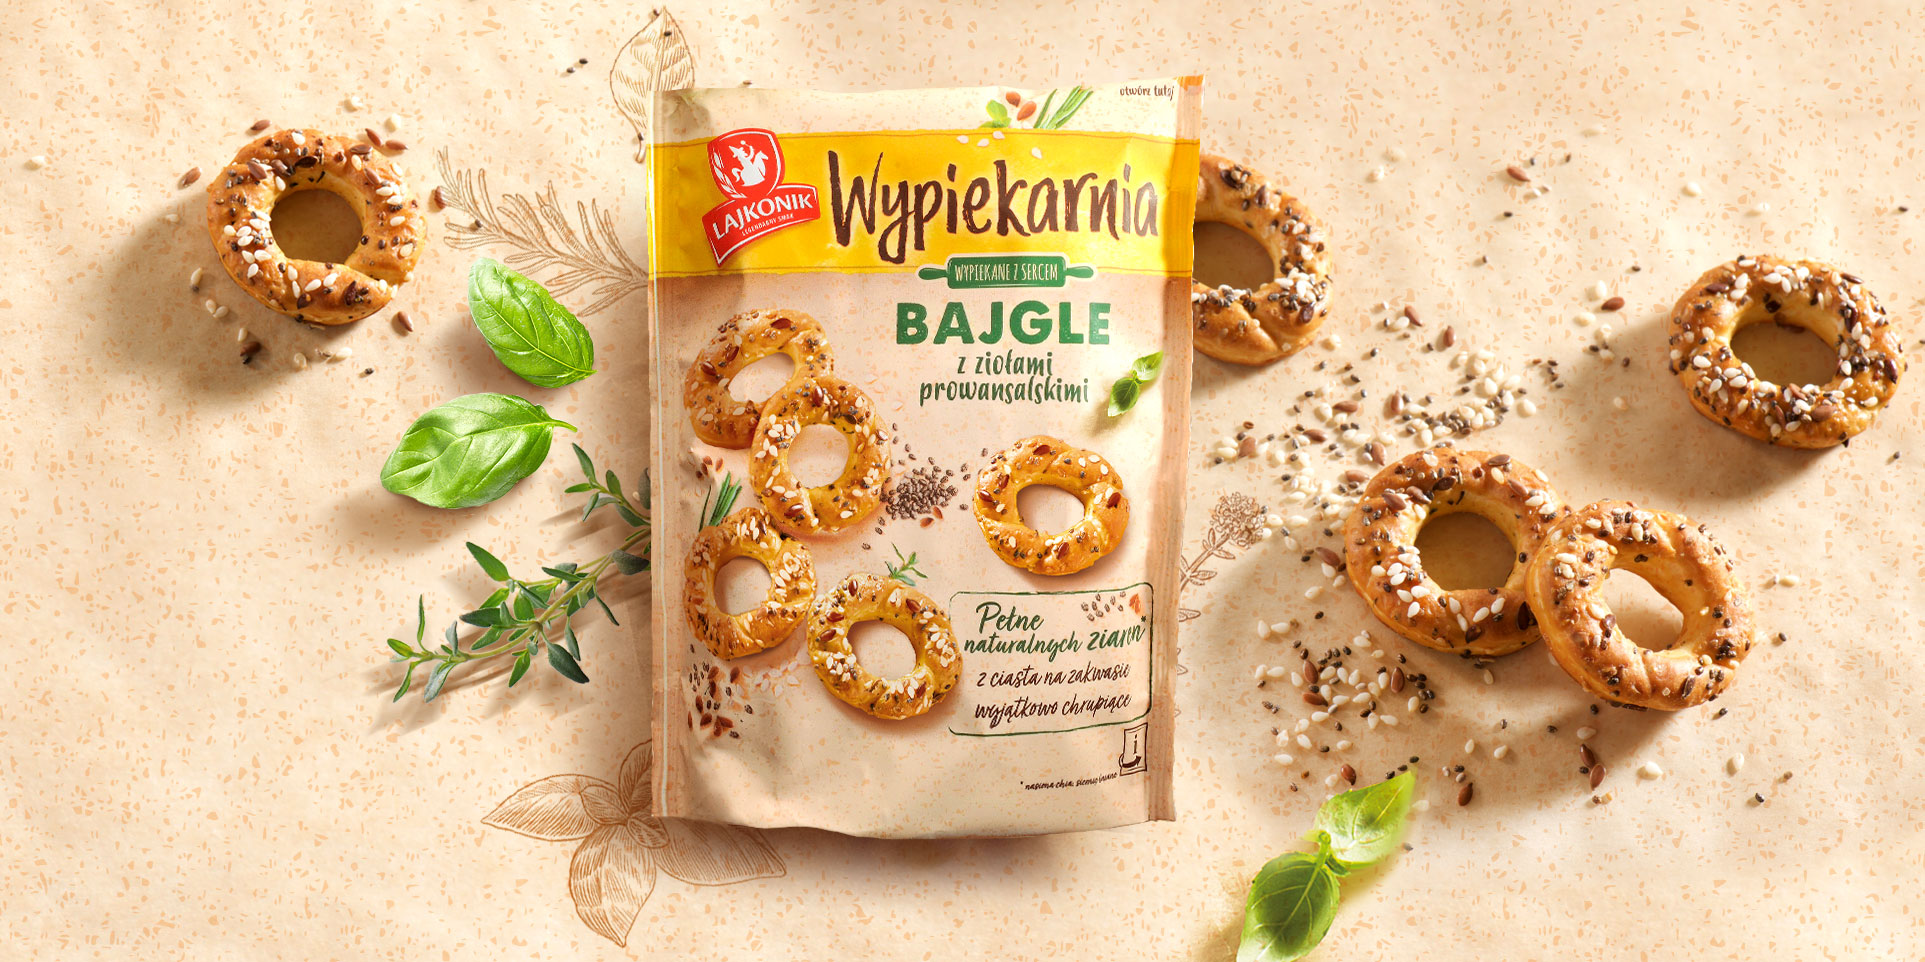 Salty snacks packaging design for Lajkonik Wypiekarnia - bagels.